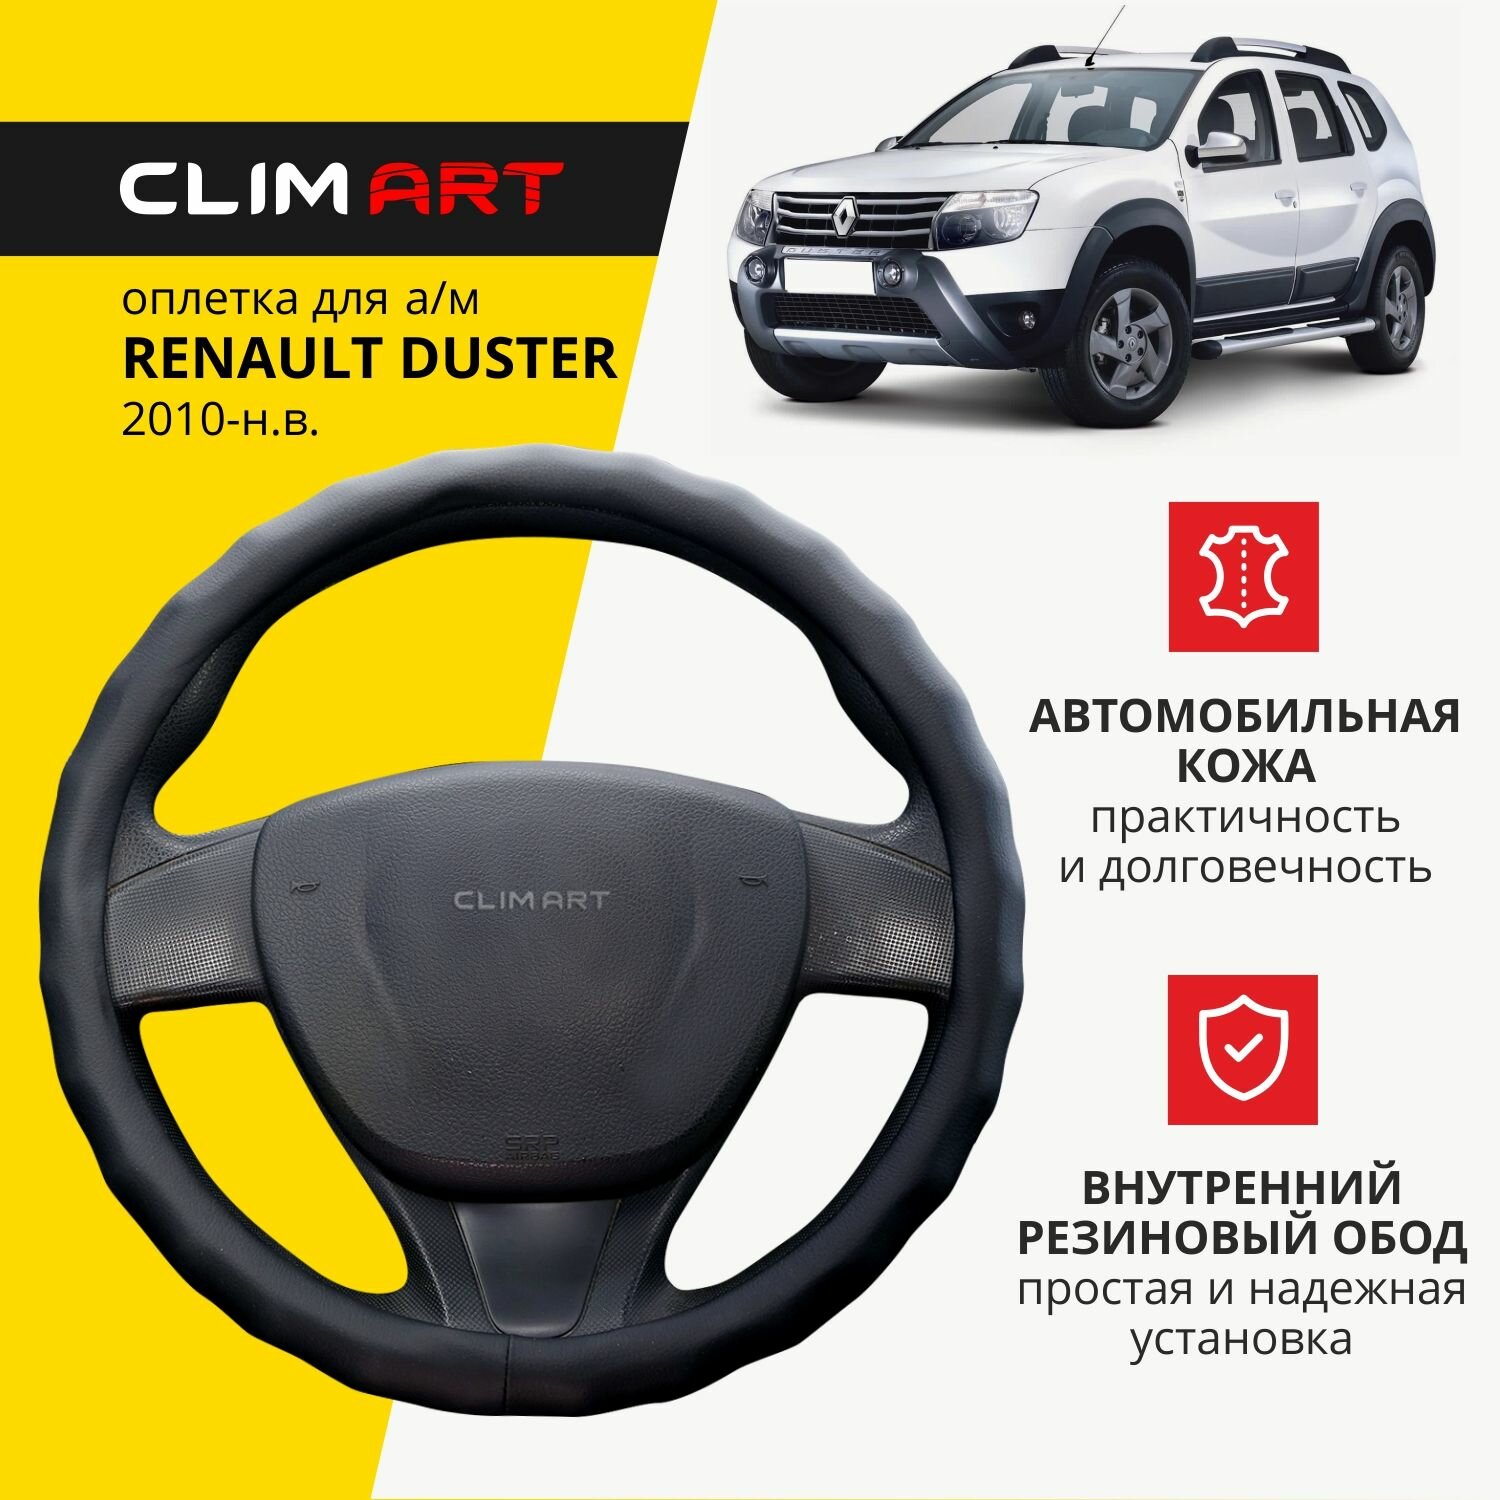 Оплетка модельная CLIM ART для Renault Duster, волнистый обод, цвет черный